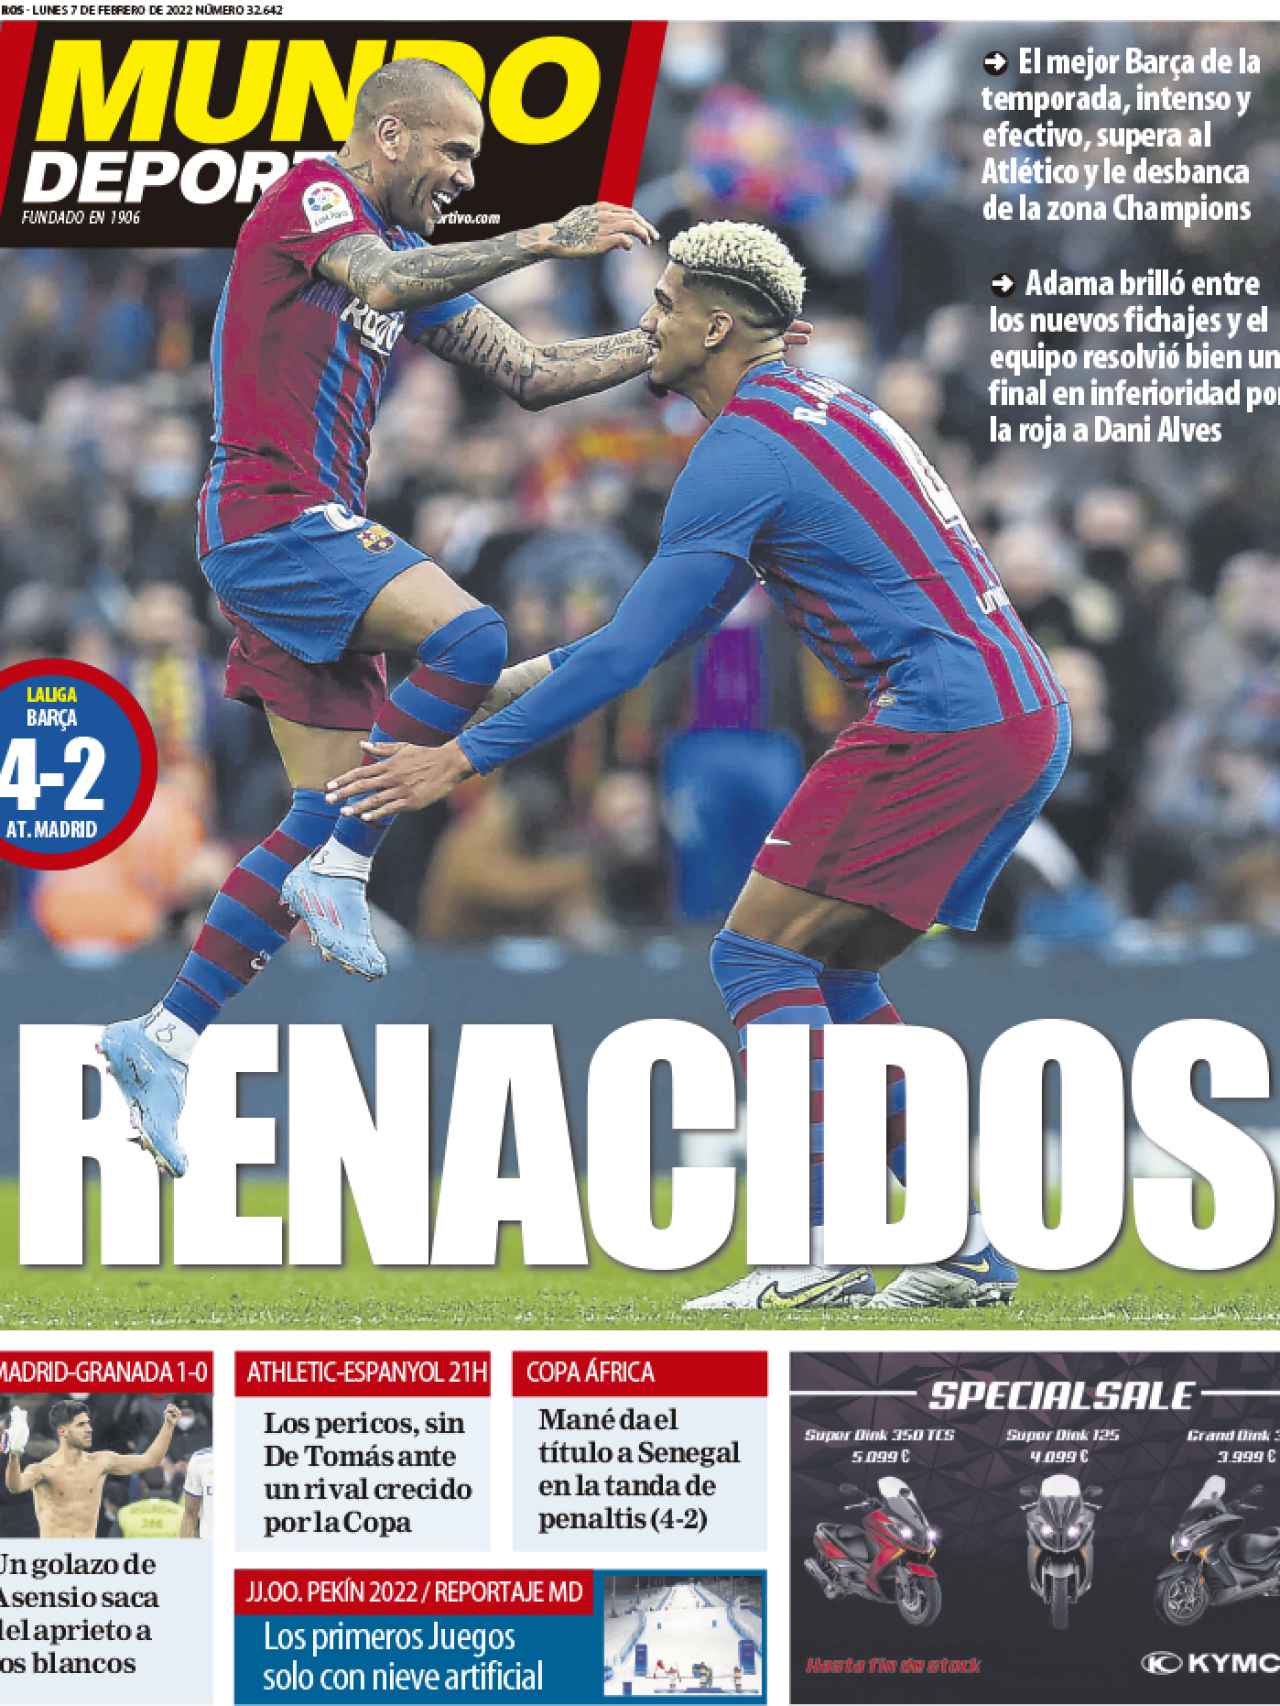 La portada del diario Mundo Deportivo (07/02/2022)